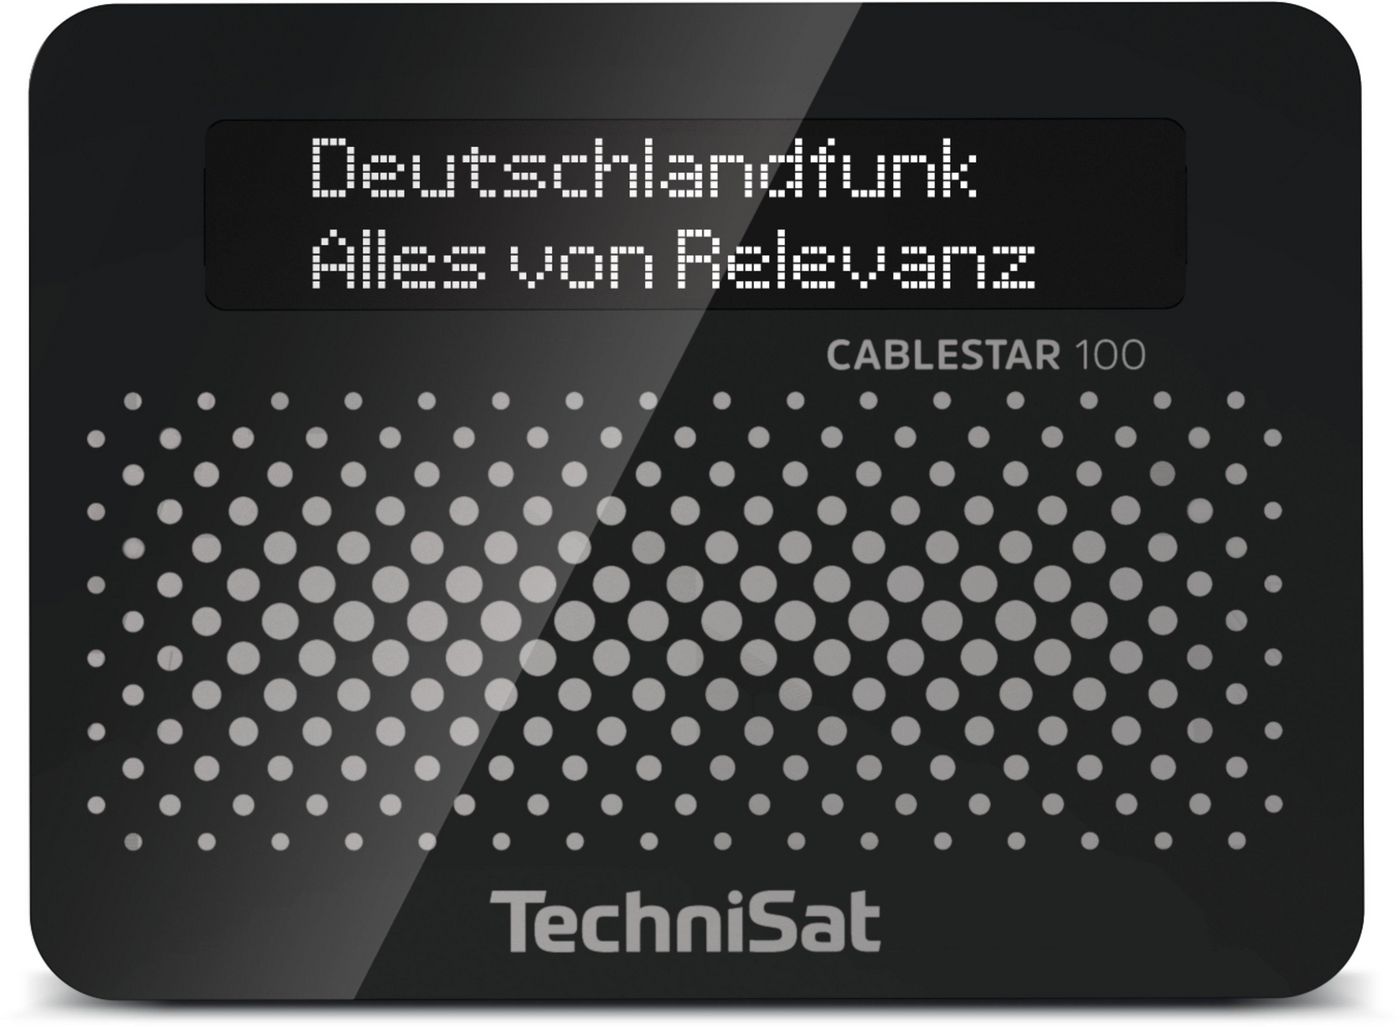 Technisat 00103915 W128274408 Cablestar 100 Clock Digital 